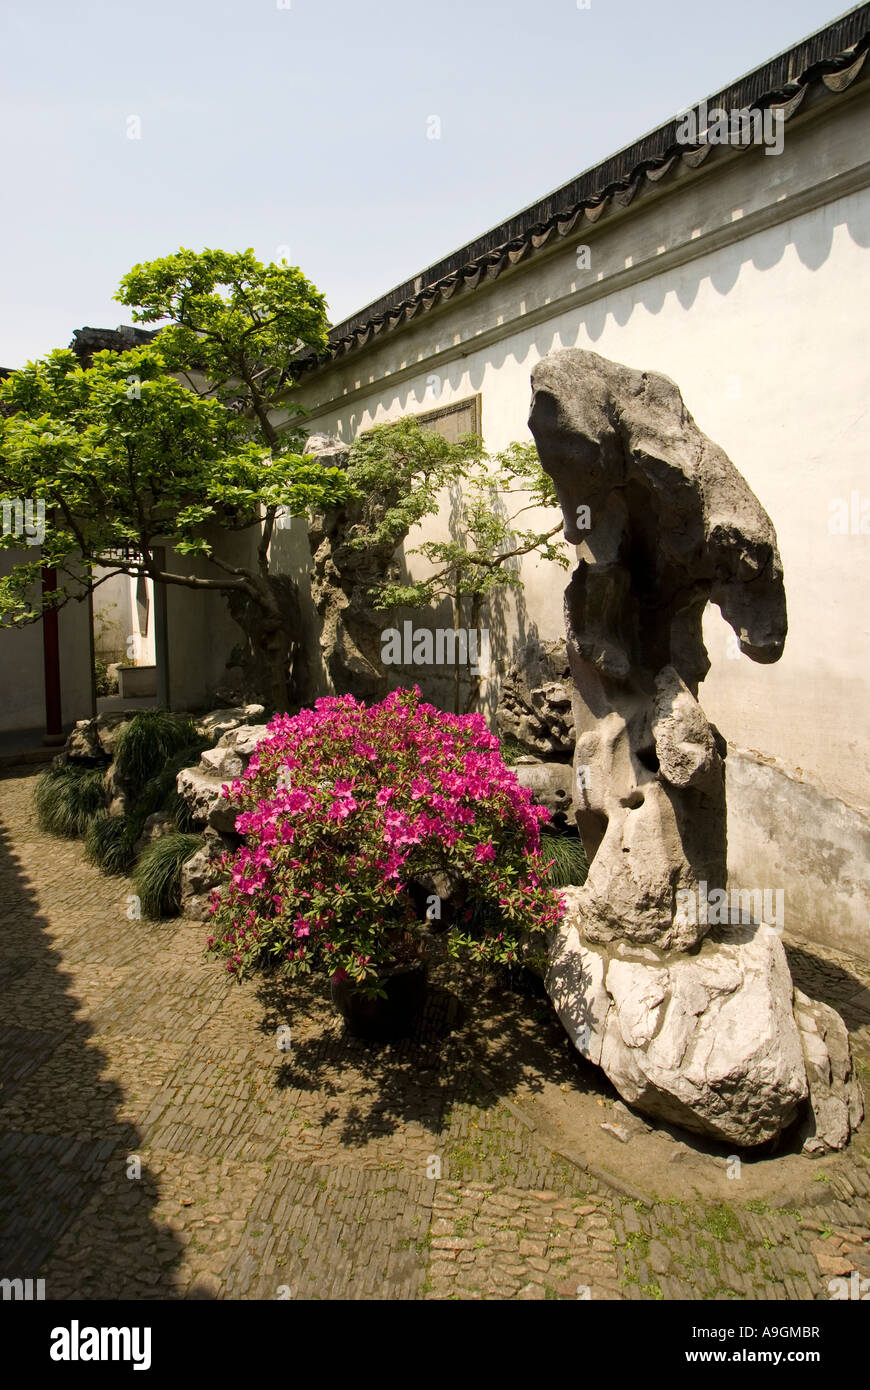 Suzhou Master di una delle reti giardino (Wang Shi Yuan) cortile paesaggistico con pietra Taihu rockery bonzai alberi e fiori Foto Stock